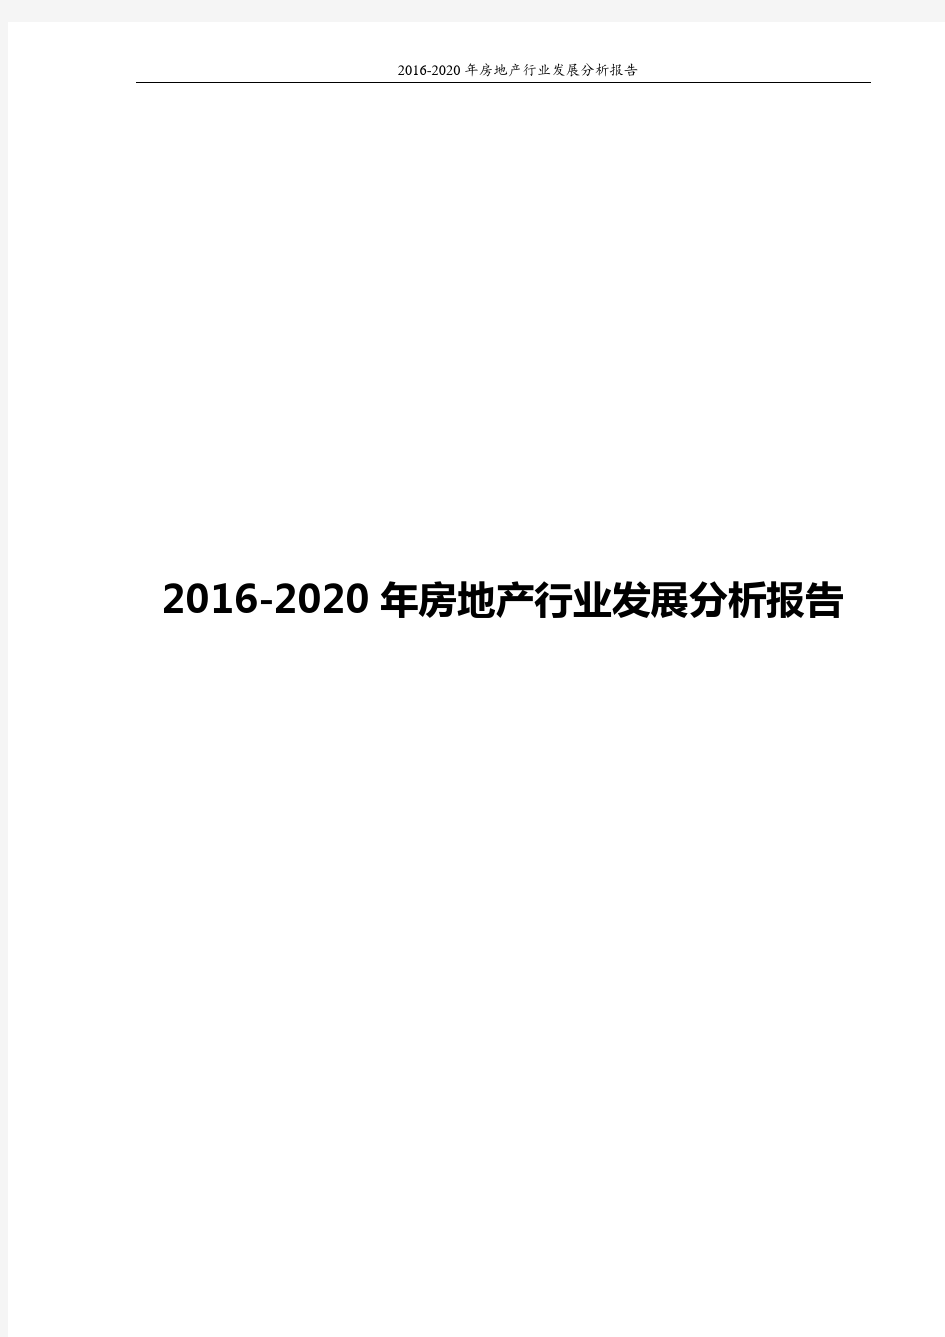 2016-2020年房地产行业发展分析报告word